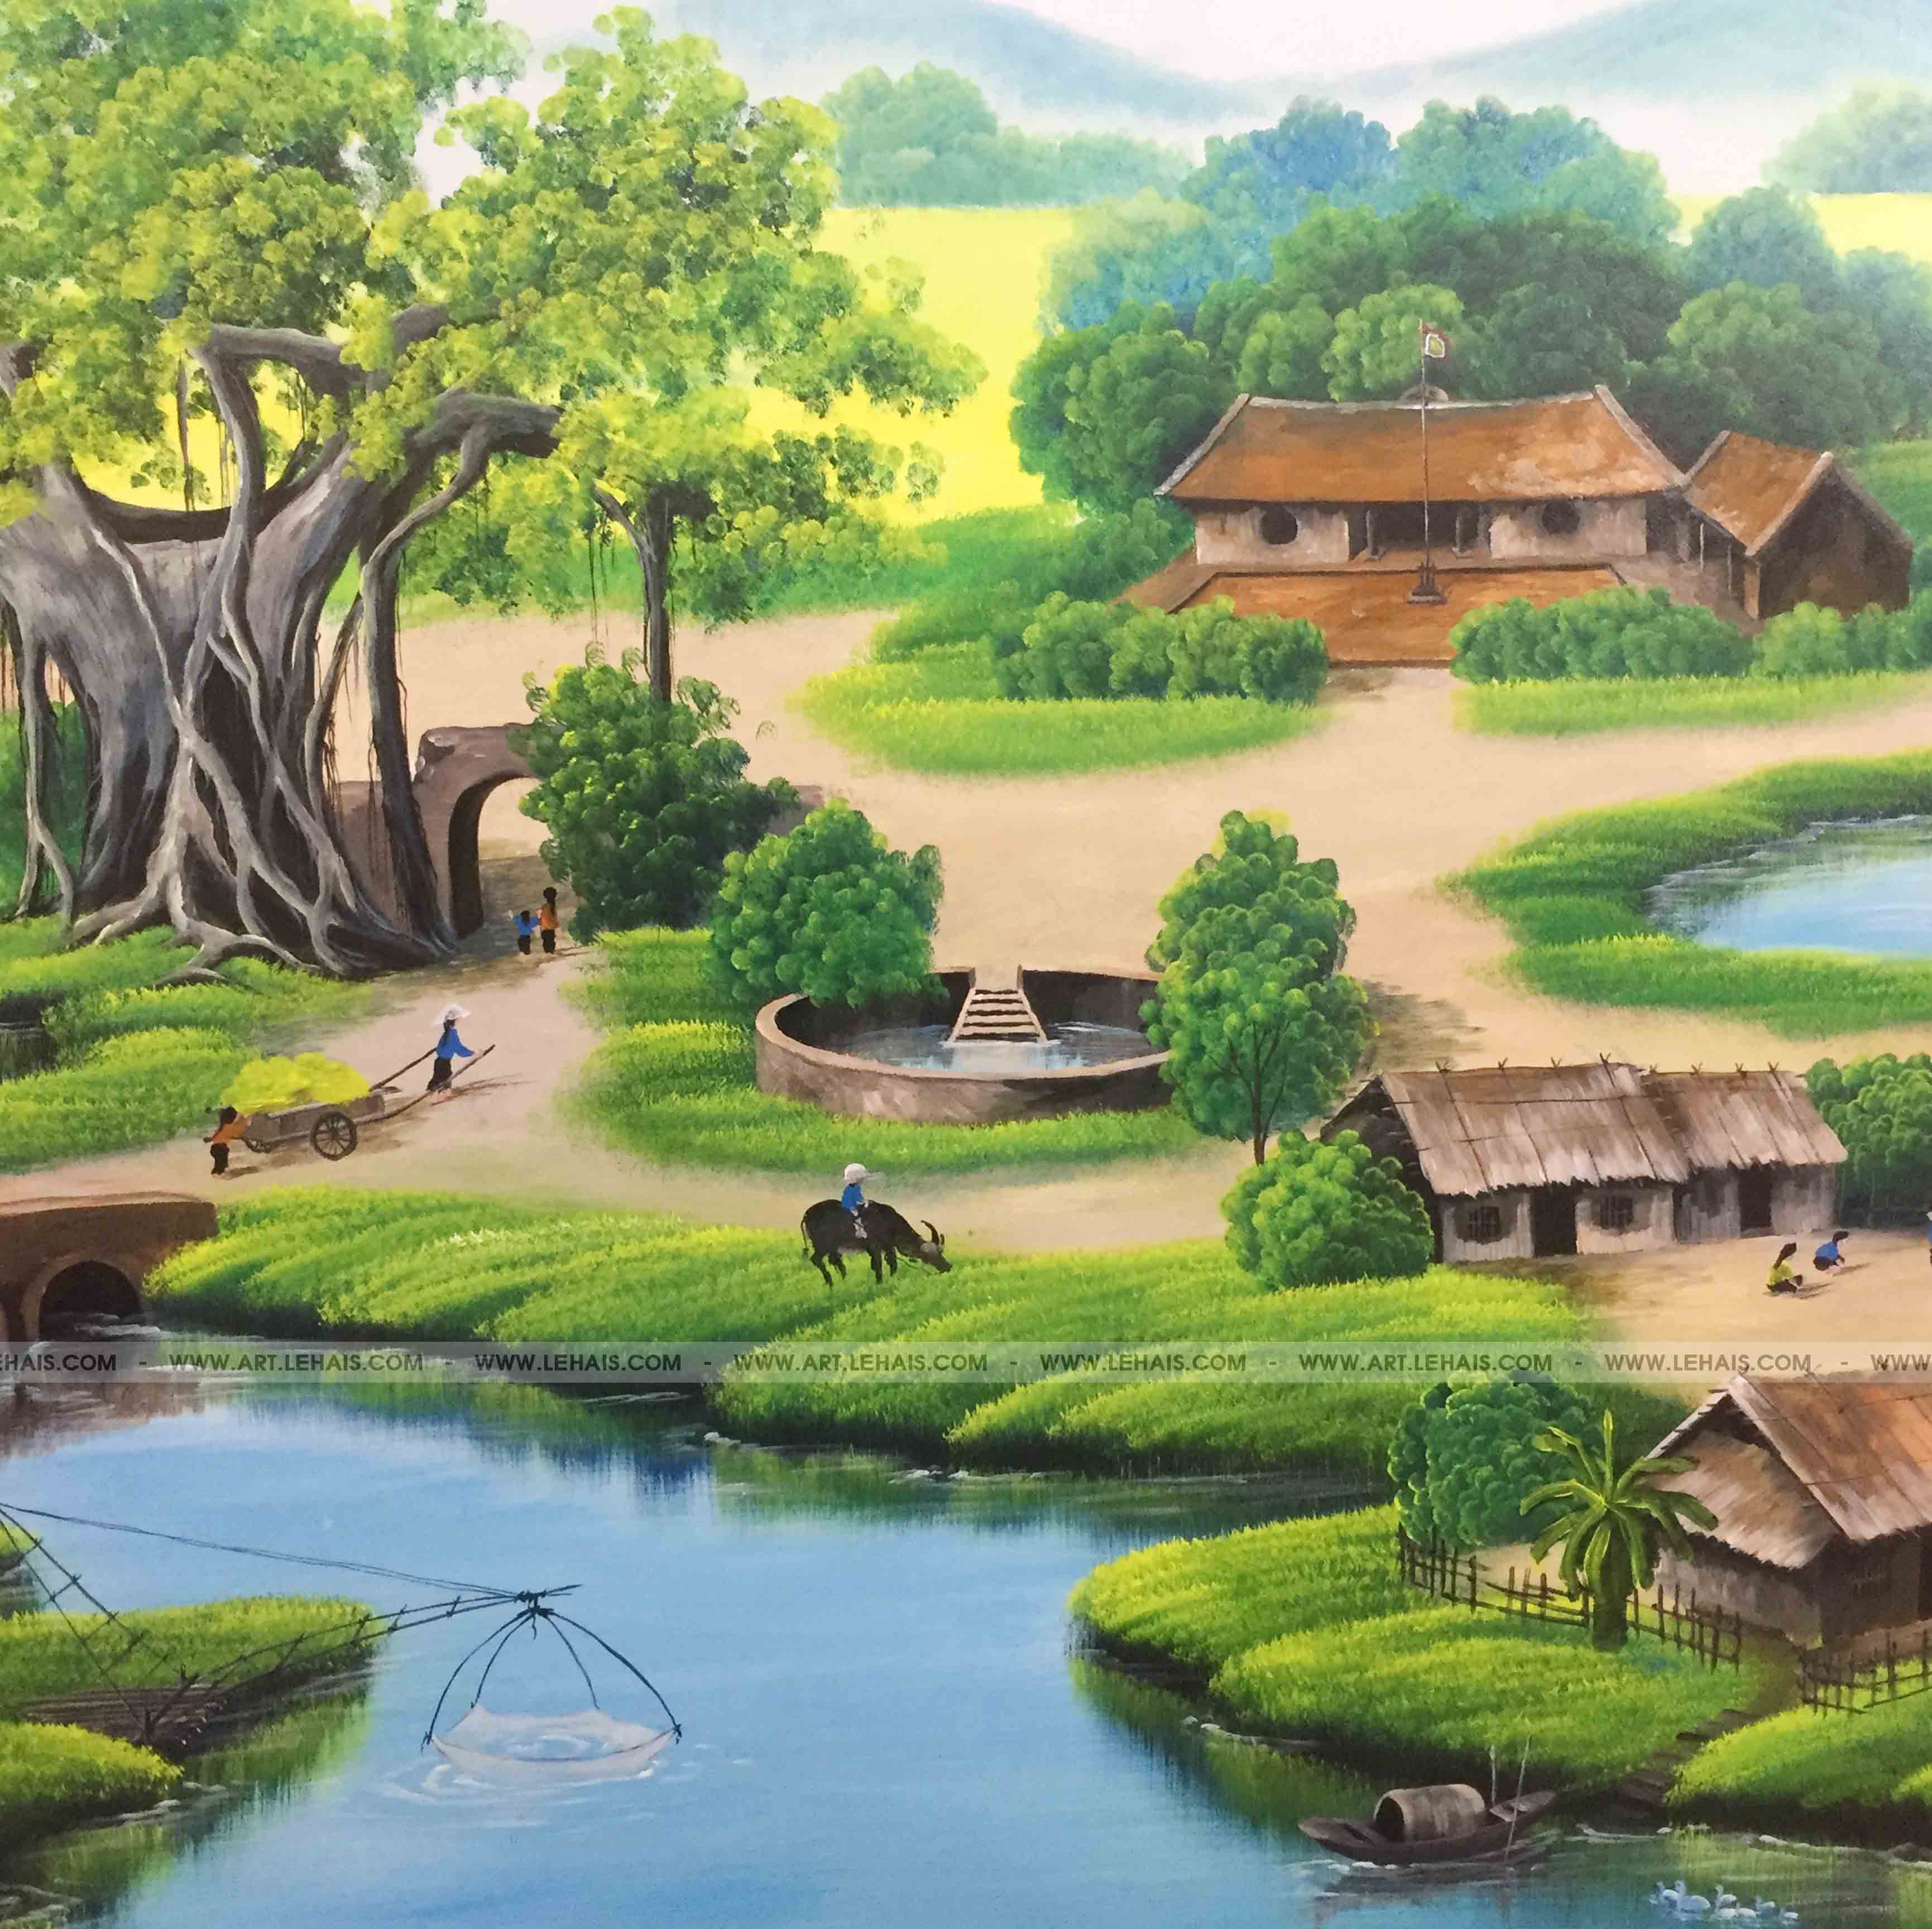 Vẽ tranh tường 3D cảnh đồng quê  tại gia đình ở Sơn Tây, Hà Nội - TT173LHAR